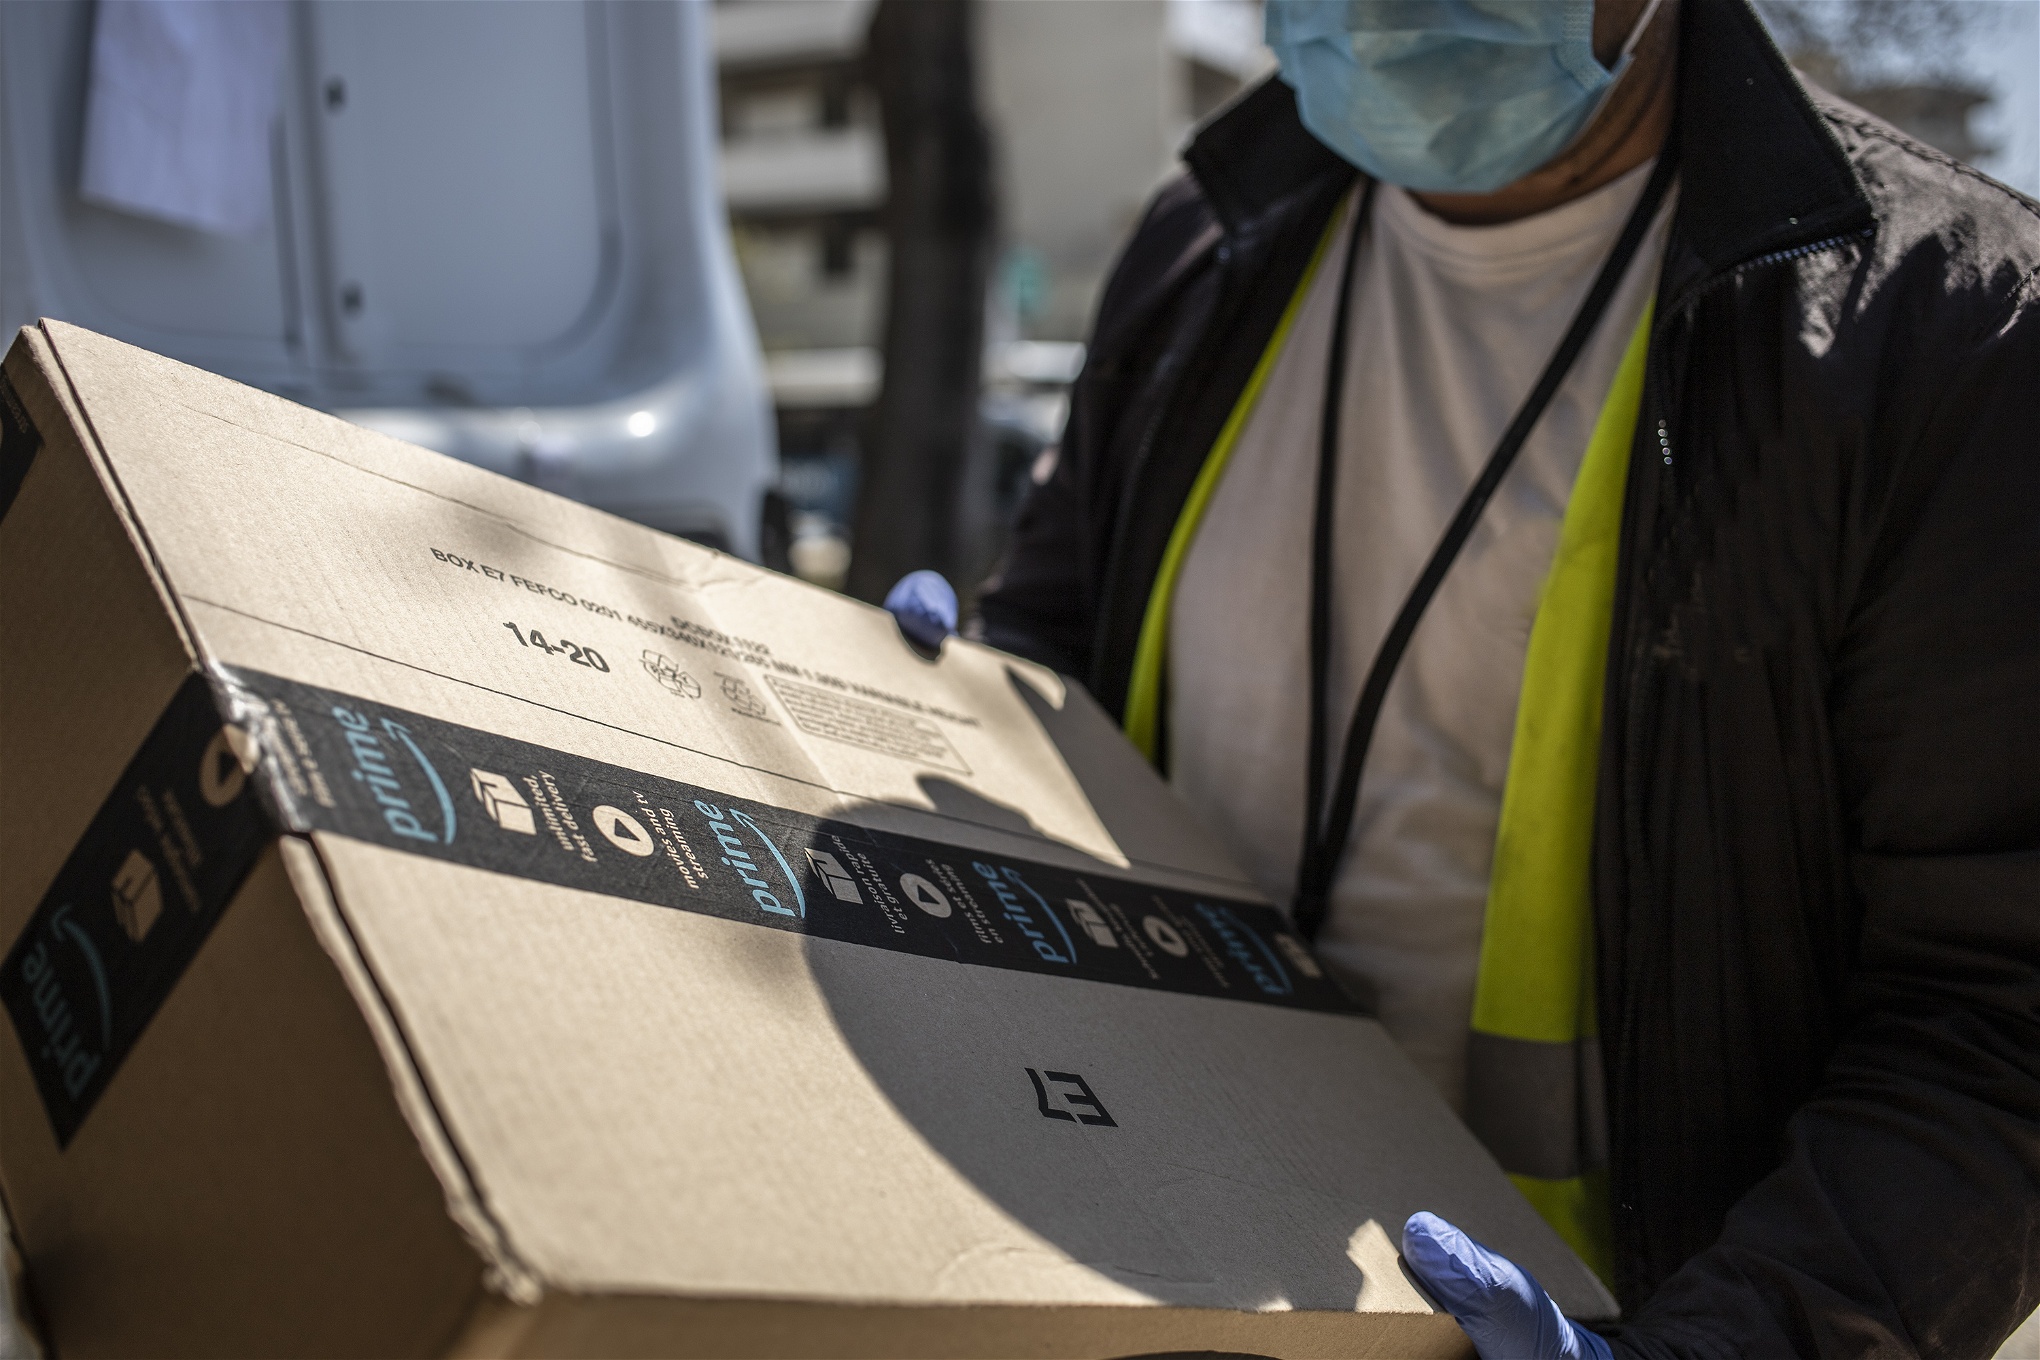 Foto: Valerio NicolosiI Italien anlitar Amazon många mindre transportföretag för att leverera paketen, inom ramen för sitt program “Deliverance Service Provider”. Förarna är ofta anställda på osäkra kontrakt.